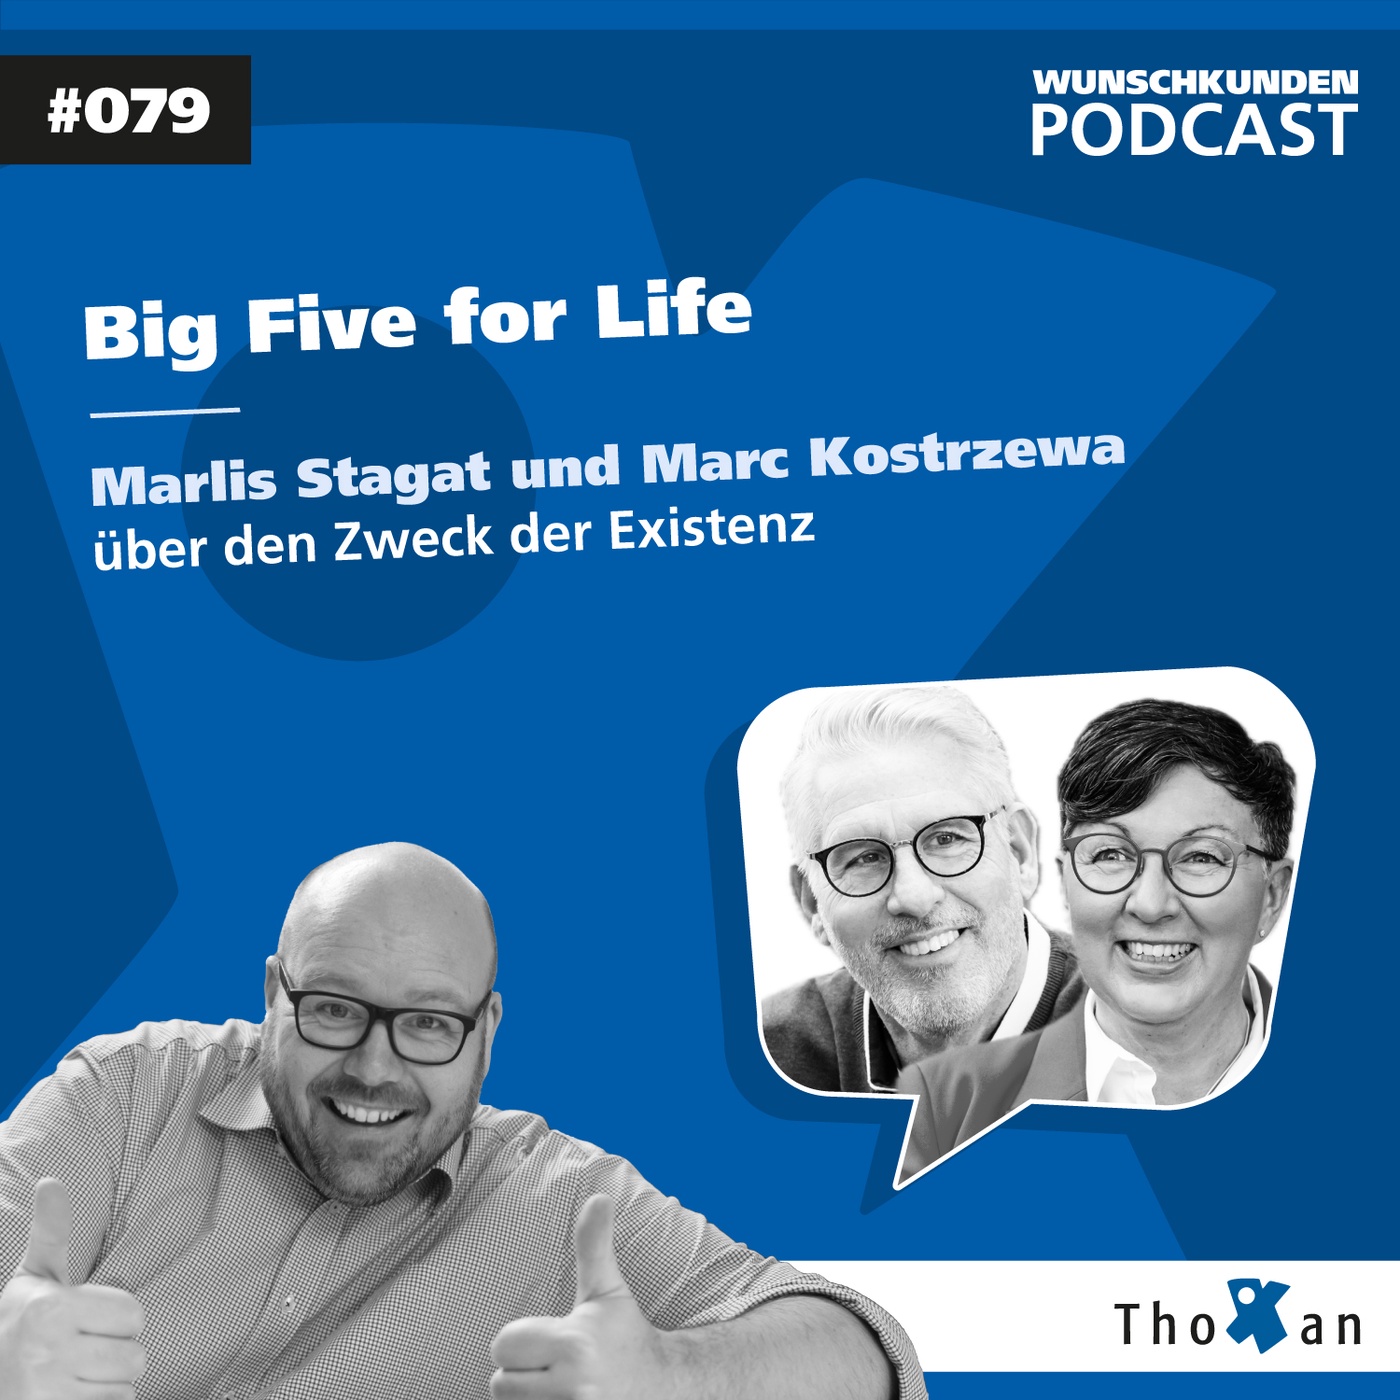 Big Five for Life: Marlis Stagat und Marc Kostrzewa über den Zweck der Existenz